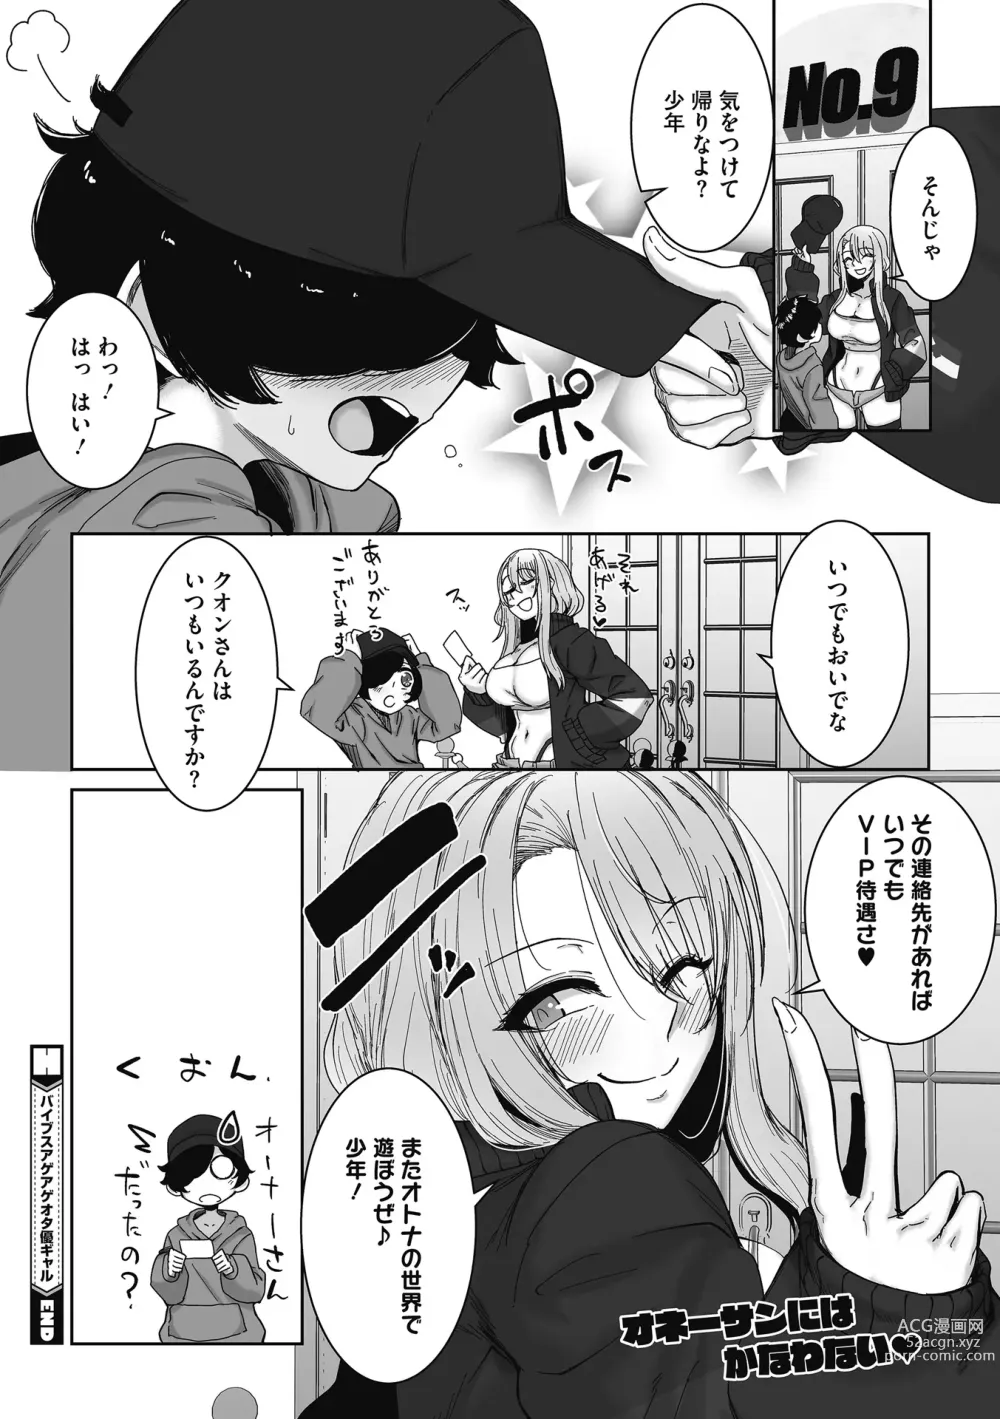 Page 26 of manga Otaku ni Yasashii Gal wa iru!